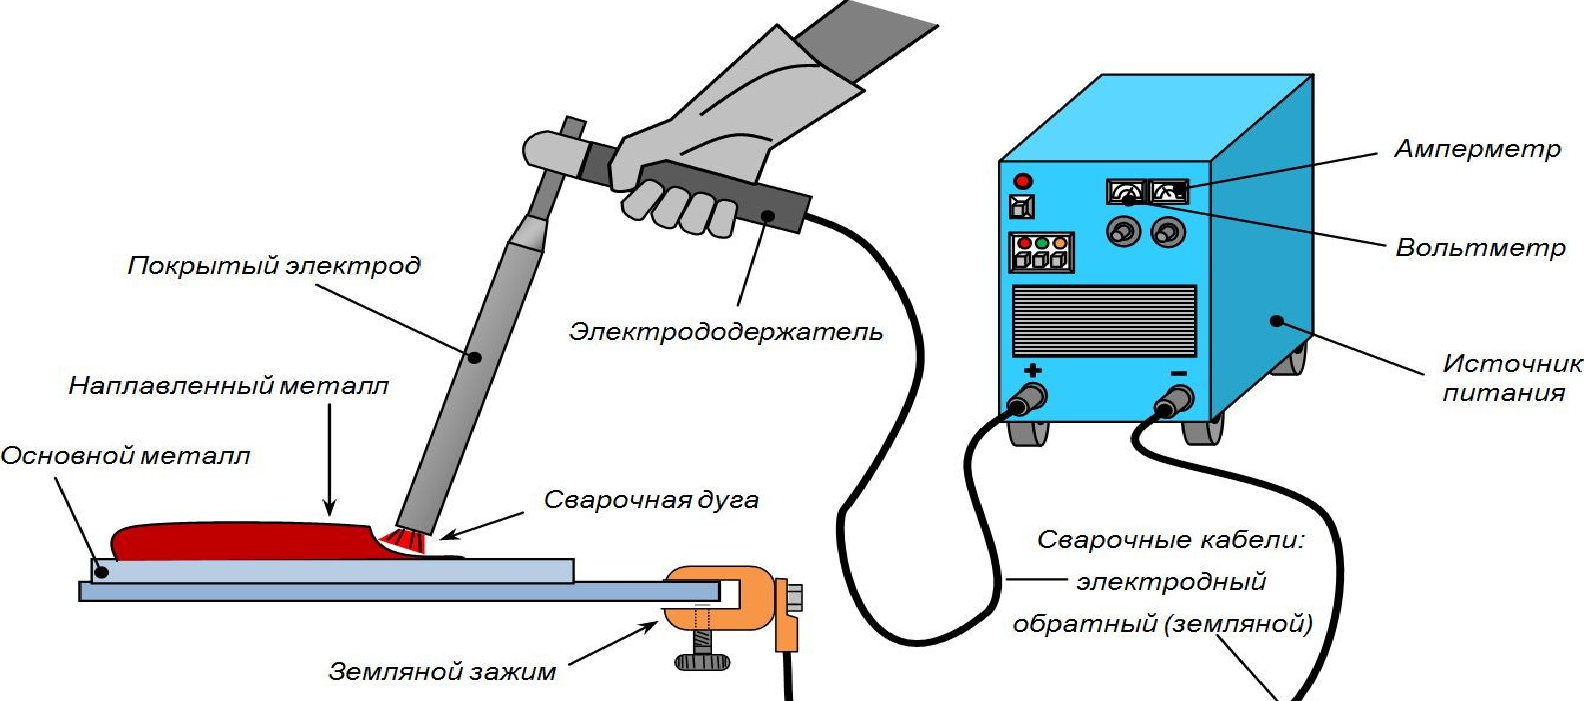 Как правильно варить трубы электросваркой инвертором?